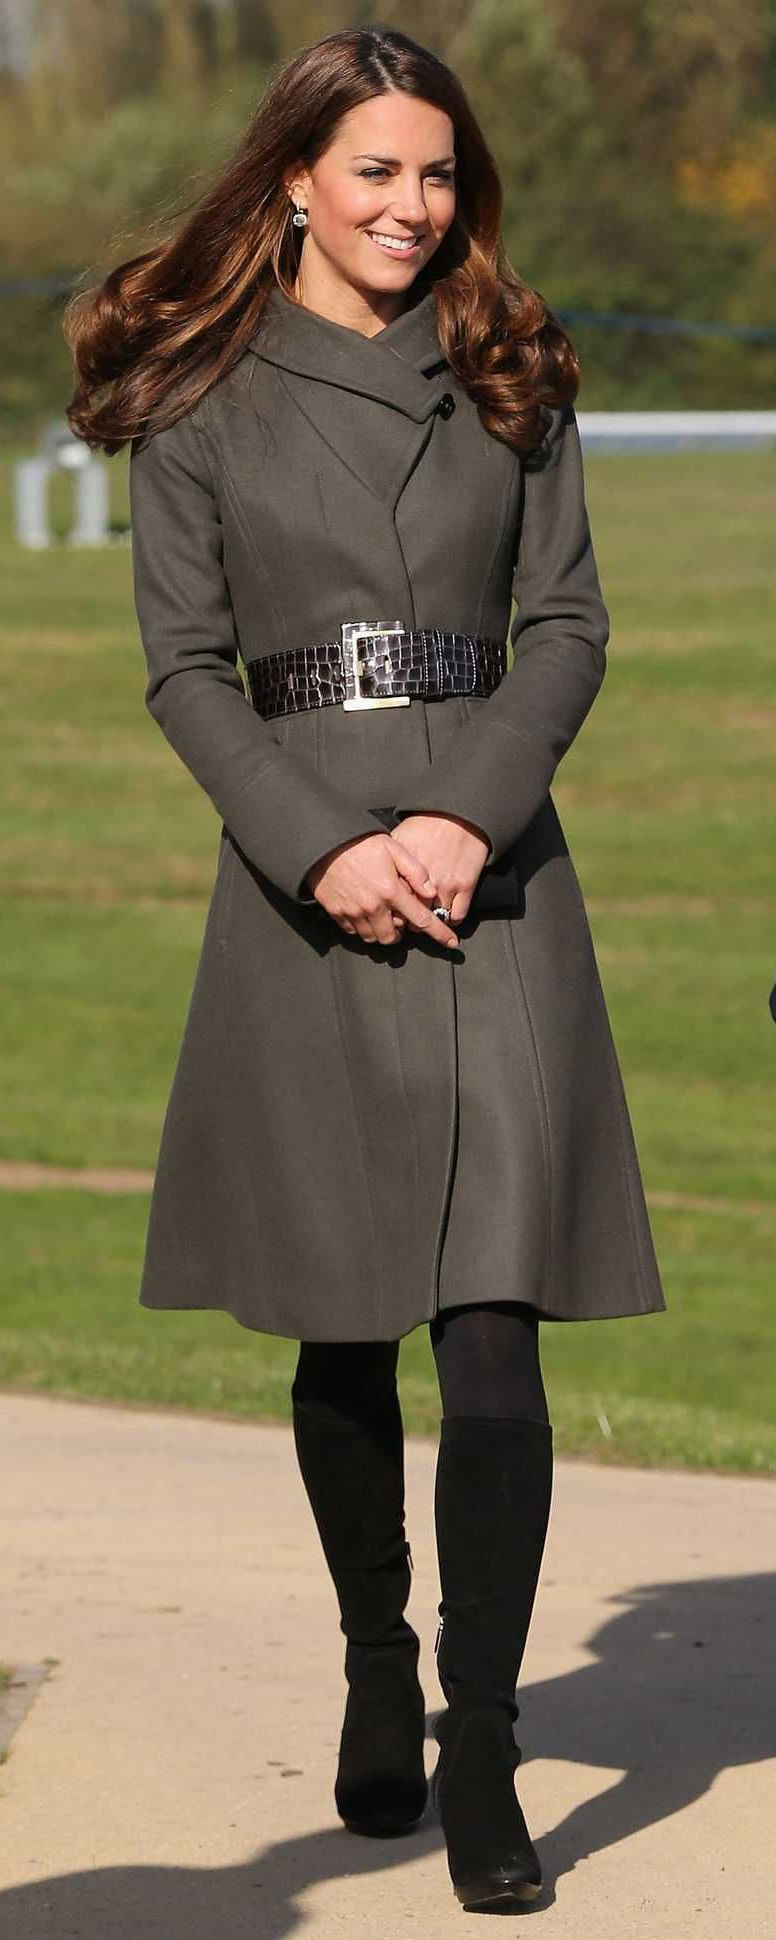 Reiss 'Betony' Embossed Belt​ as seen on Kate Middleton, the Duchess of Cambridge.